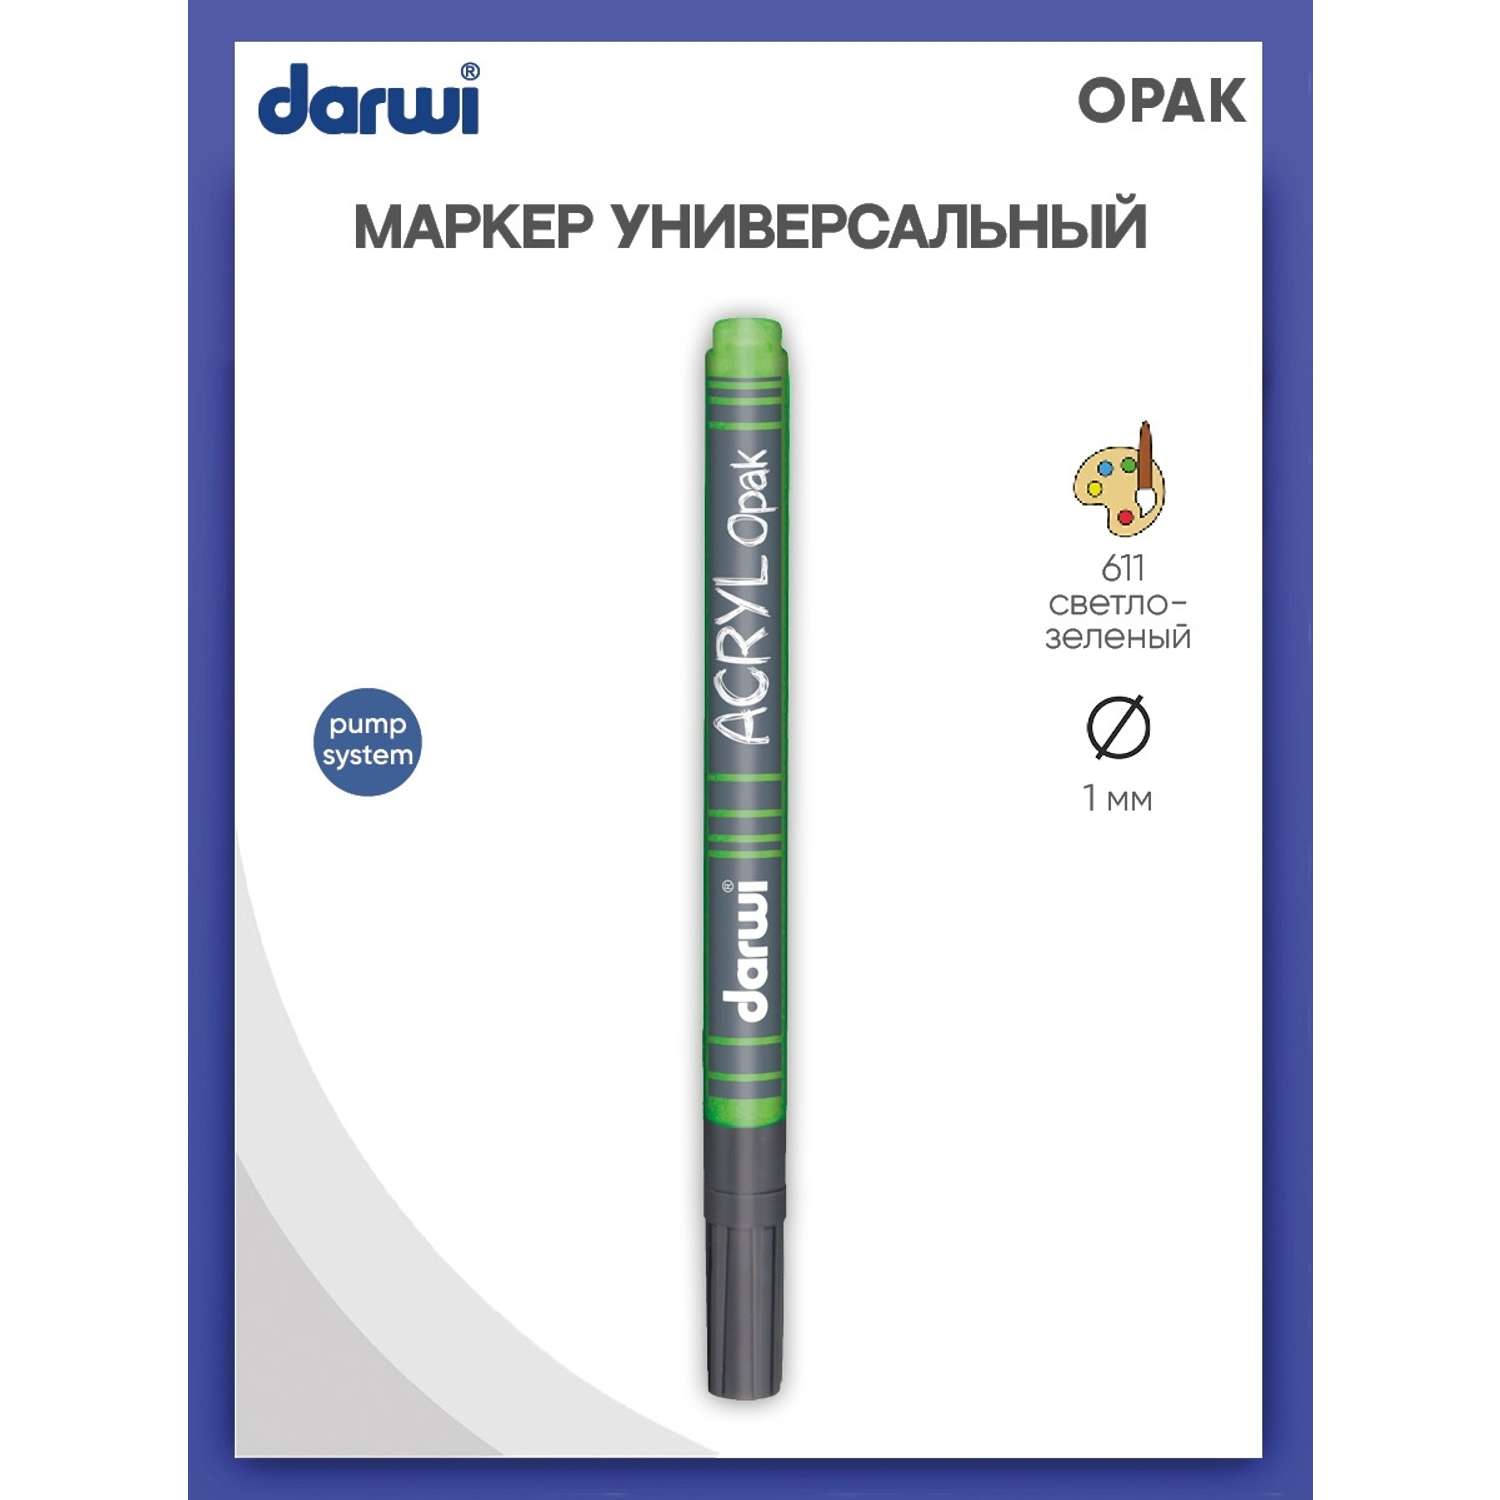 Маркер Darwi акриловый OPAK DA0220014 1 мм укрывистый 611 светло - зеленый - фото 1